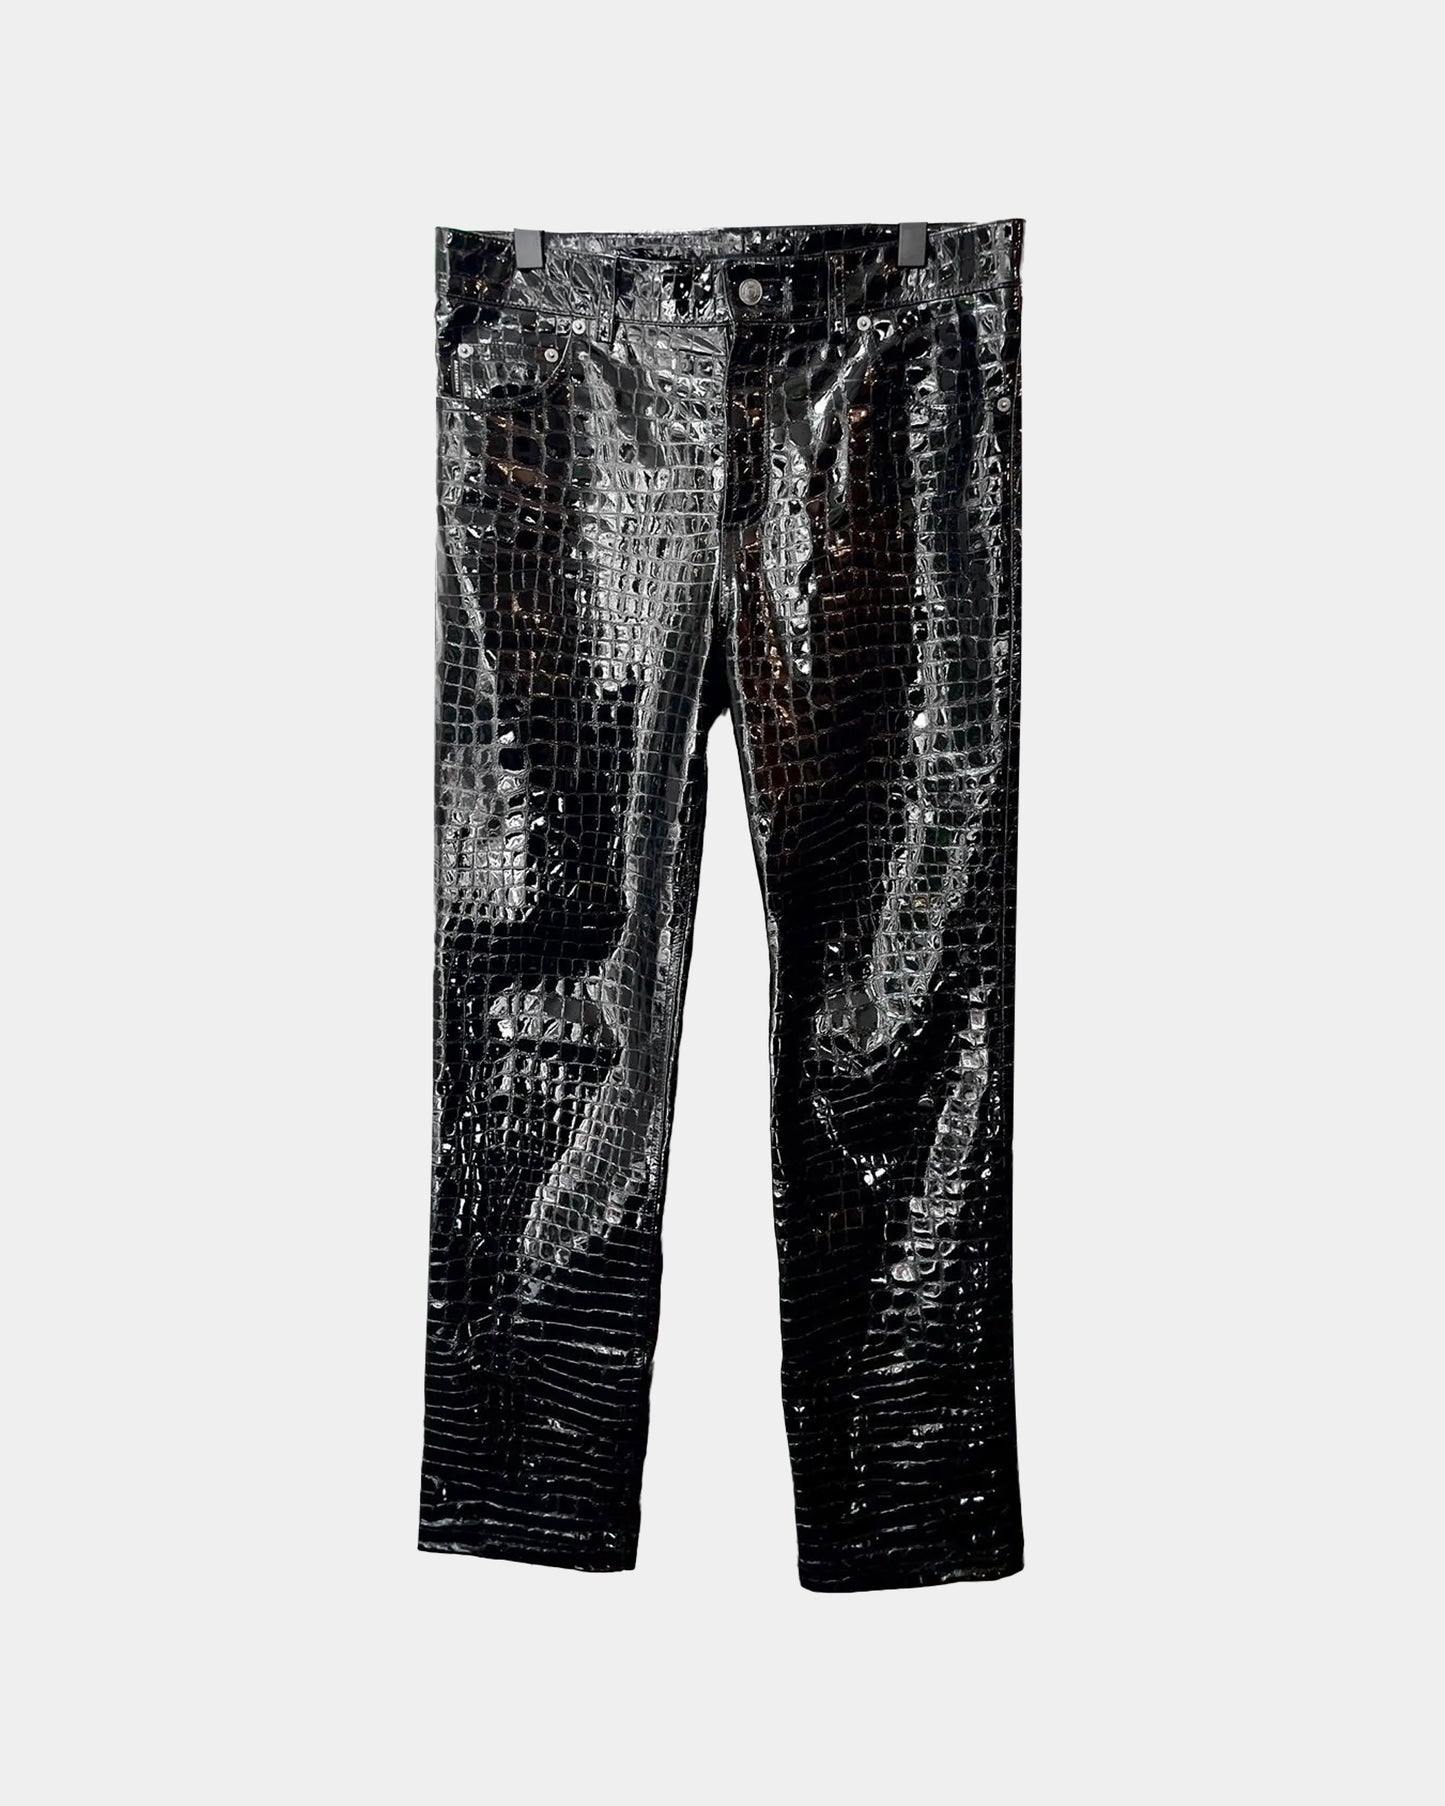 Balenciaga CROC Patent Leather Jeans Pants SZ50 fit 32,33,34